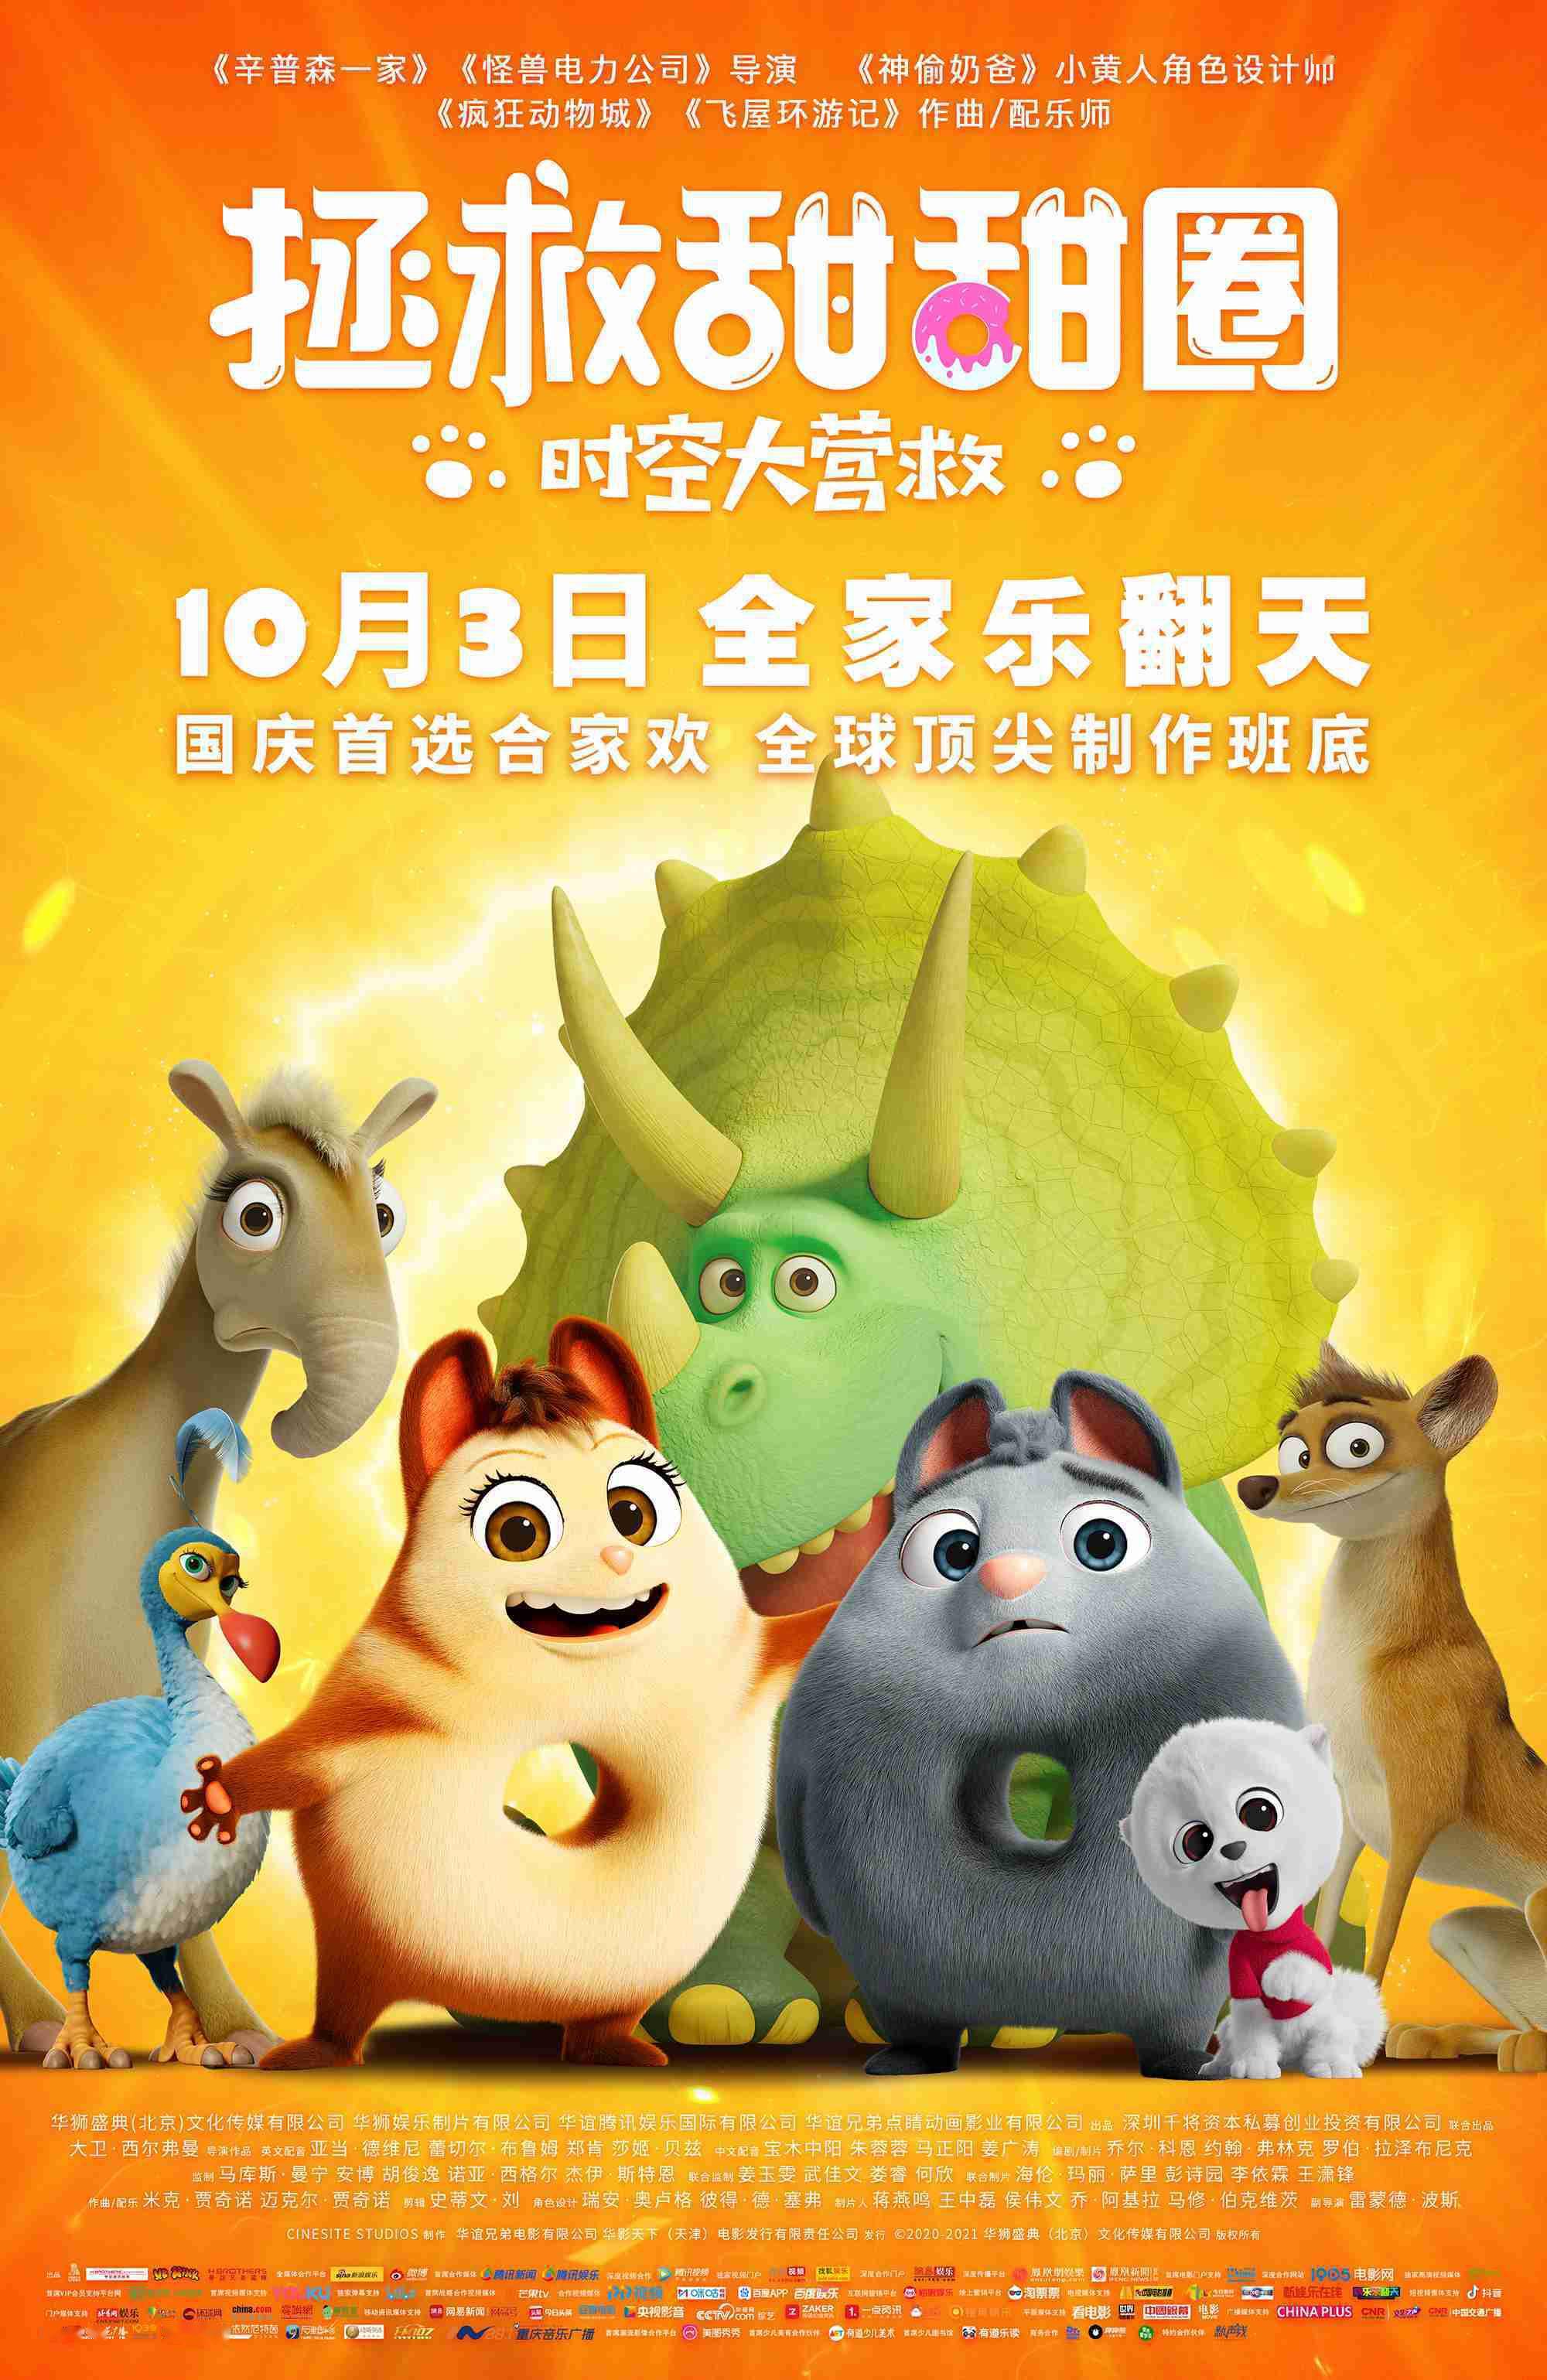 时光网讯 今日,动画电影《拯救甜甜圈:时空大营救》发布定档海报,宣布